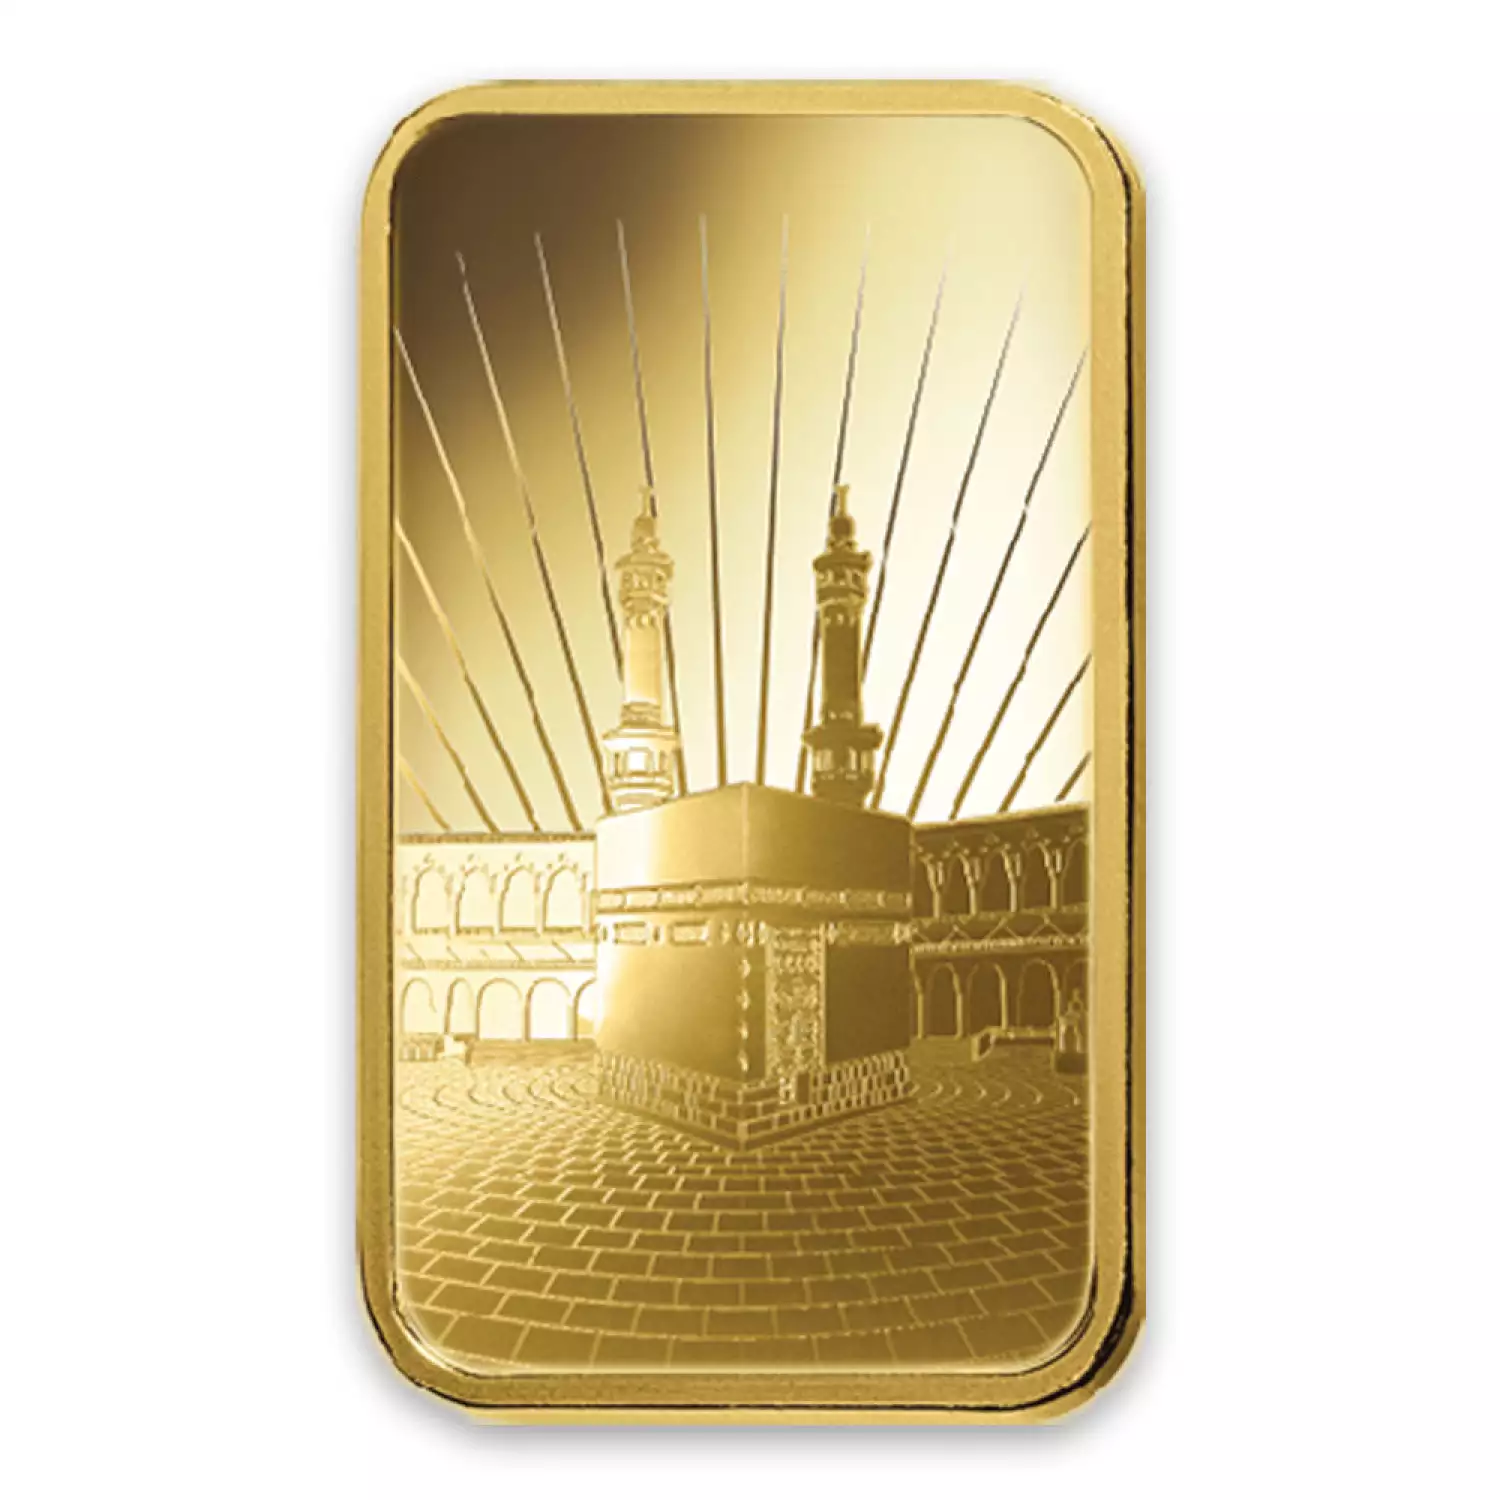 5g PAMP Gold Bar - Ka `Bah. Mecca (2)